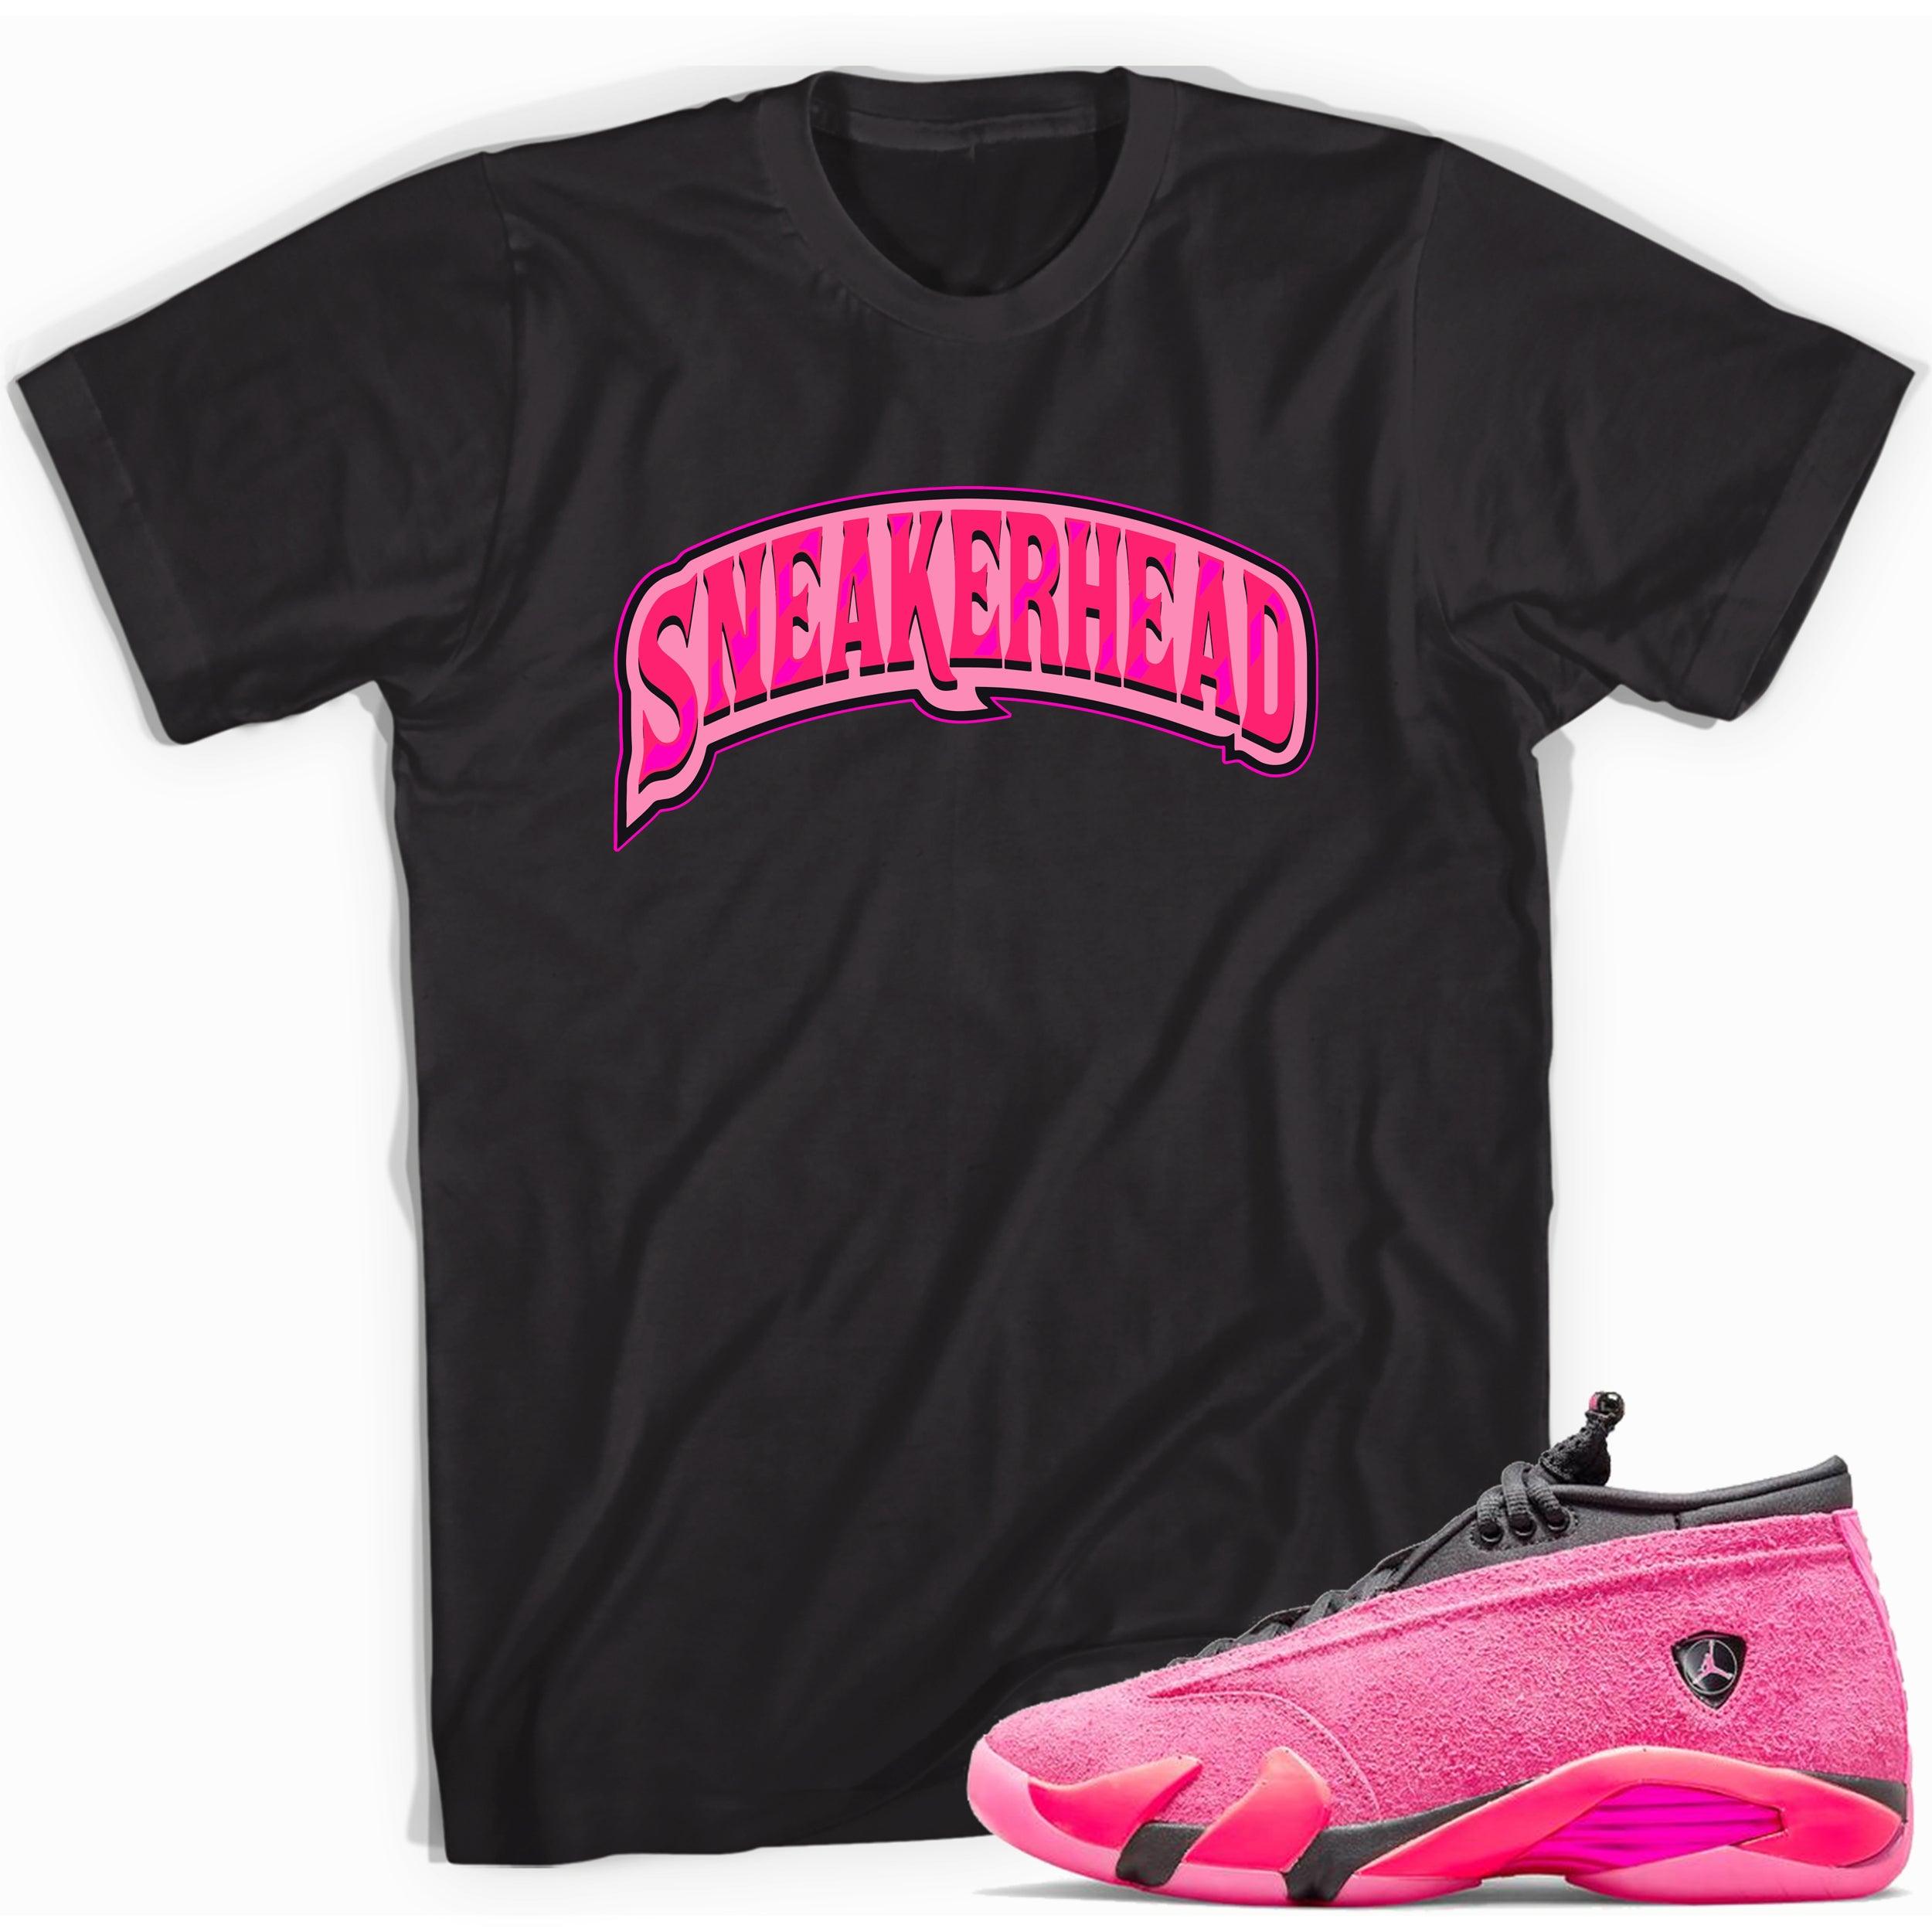 Black Sneakerhead Shirt Jordan 14 Shocking Pink photo